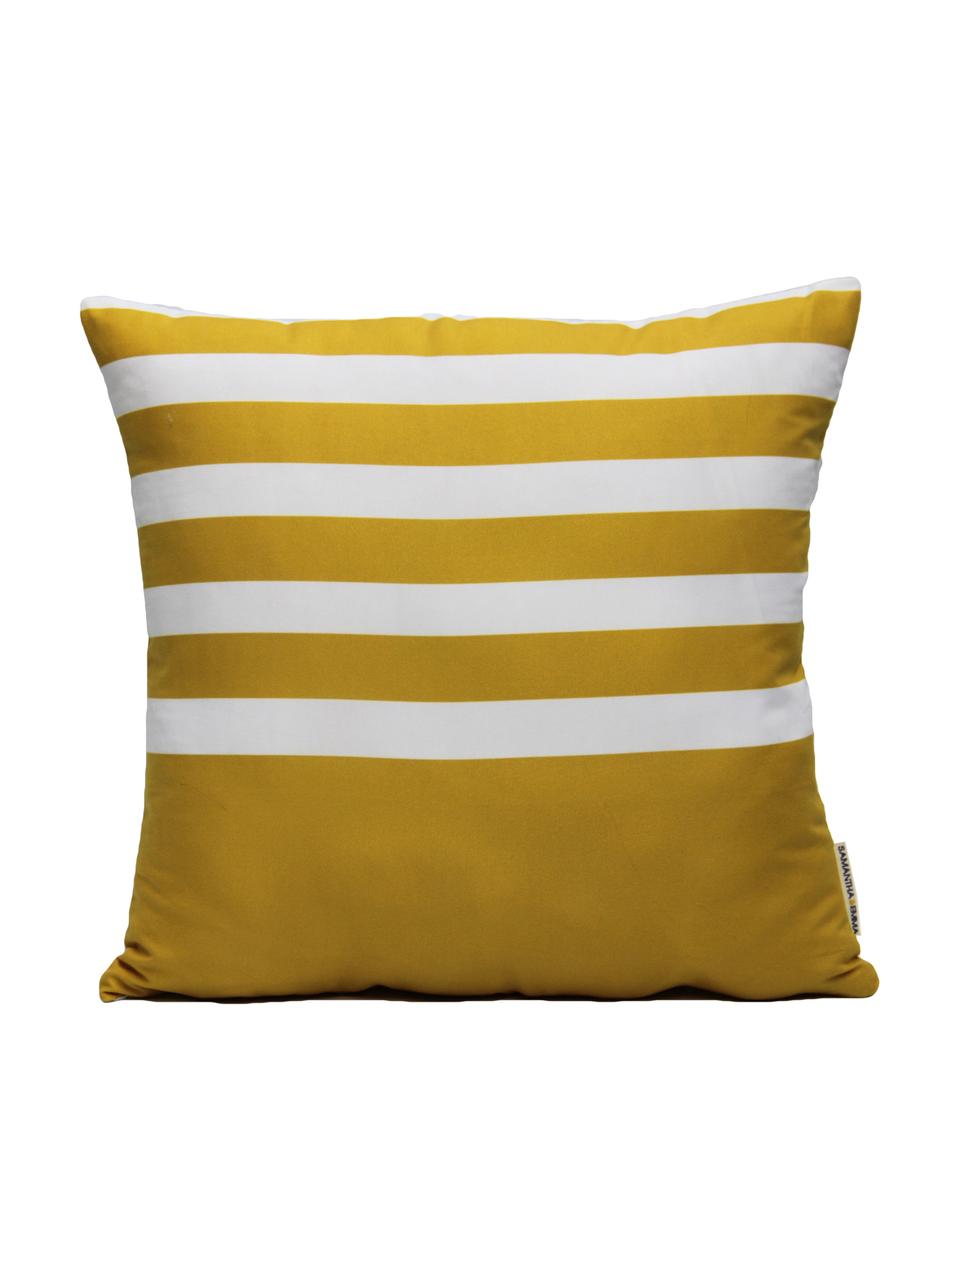 Poszewka na poduszkę Ela, Poliester, Biały, żółty, S 40 x D 40 cm